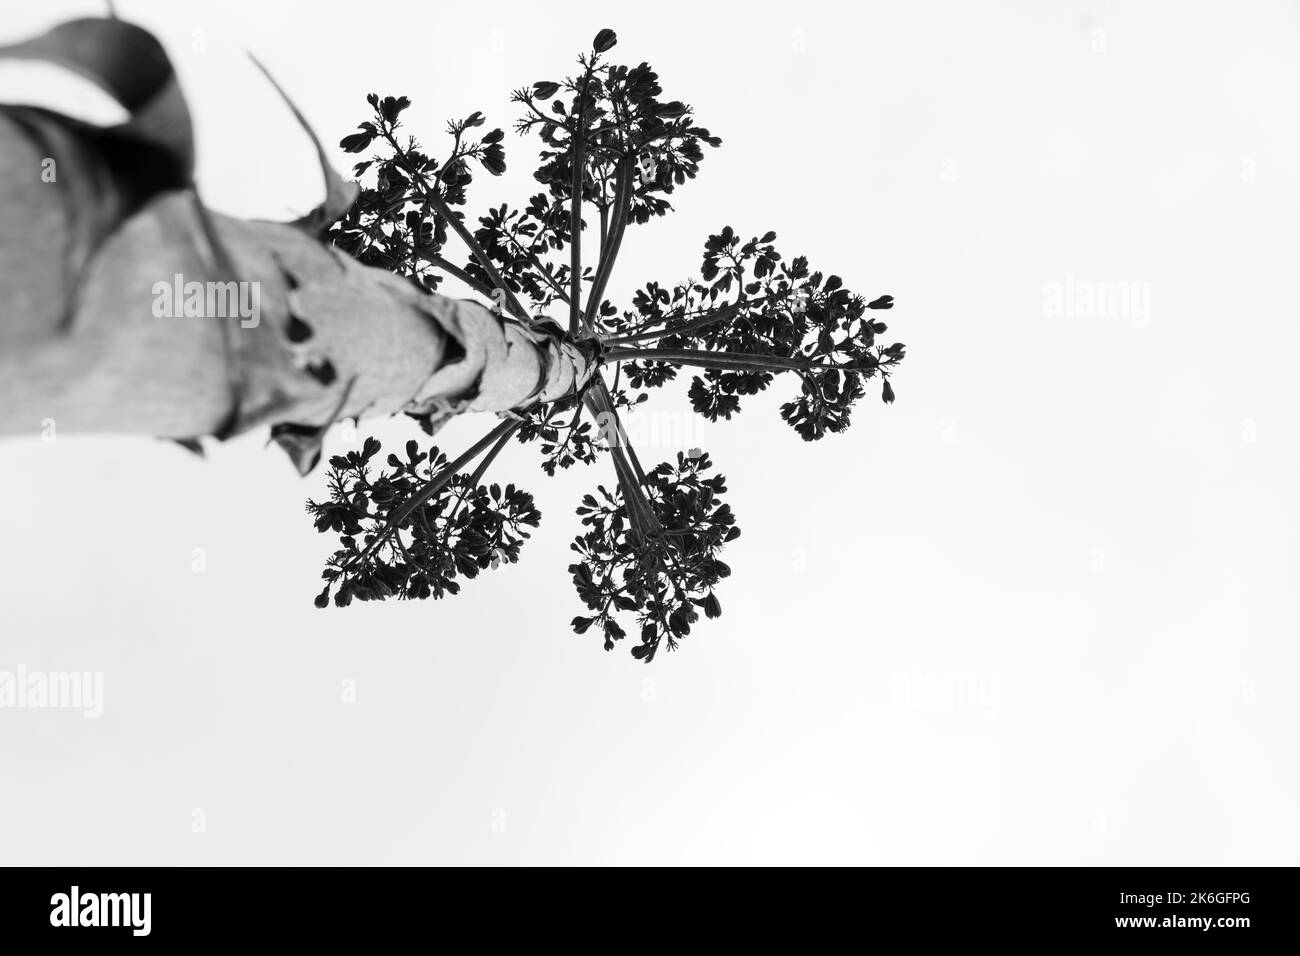 Schwarz-weiße Aufnahme von Agave salmiana vertikalen floralen Stiel in Silhouette. Low-Angle-Ansicht. Stockfoto